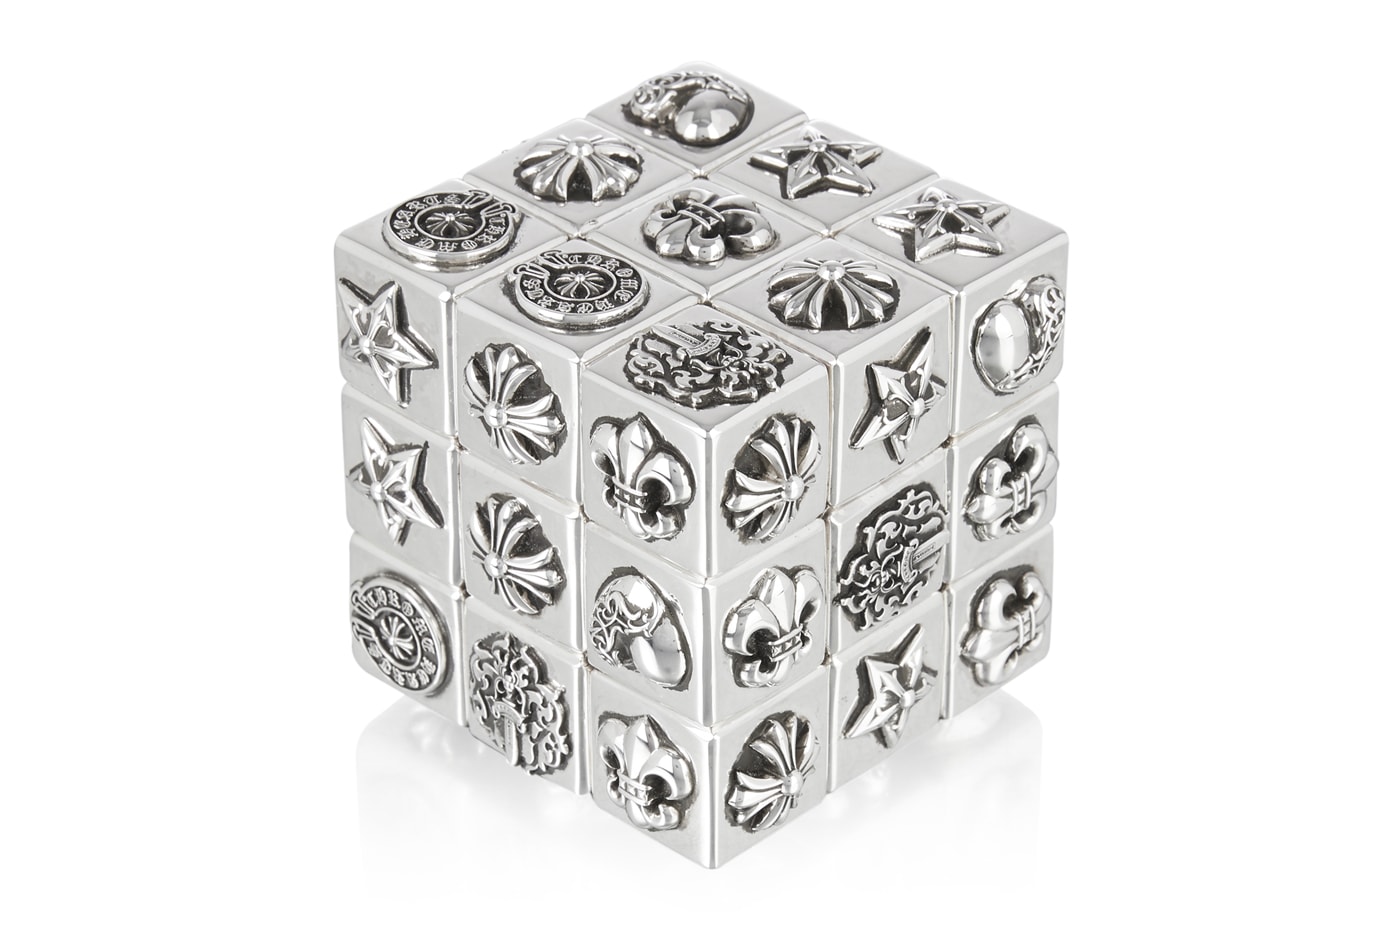 お値段70万円超えのクロムハーツ製ルービックキューブをチェック Chrome Hearts Puzzle Rubiks Cube Release Info Buy Price 